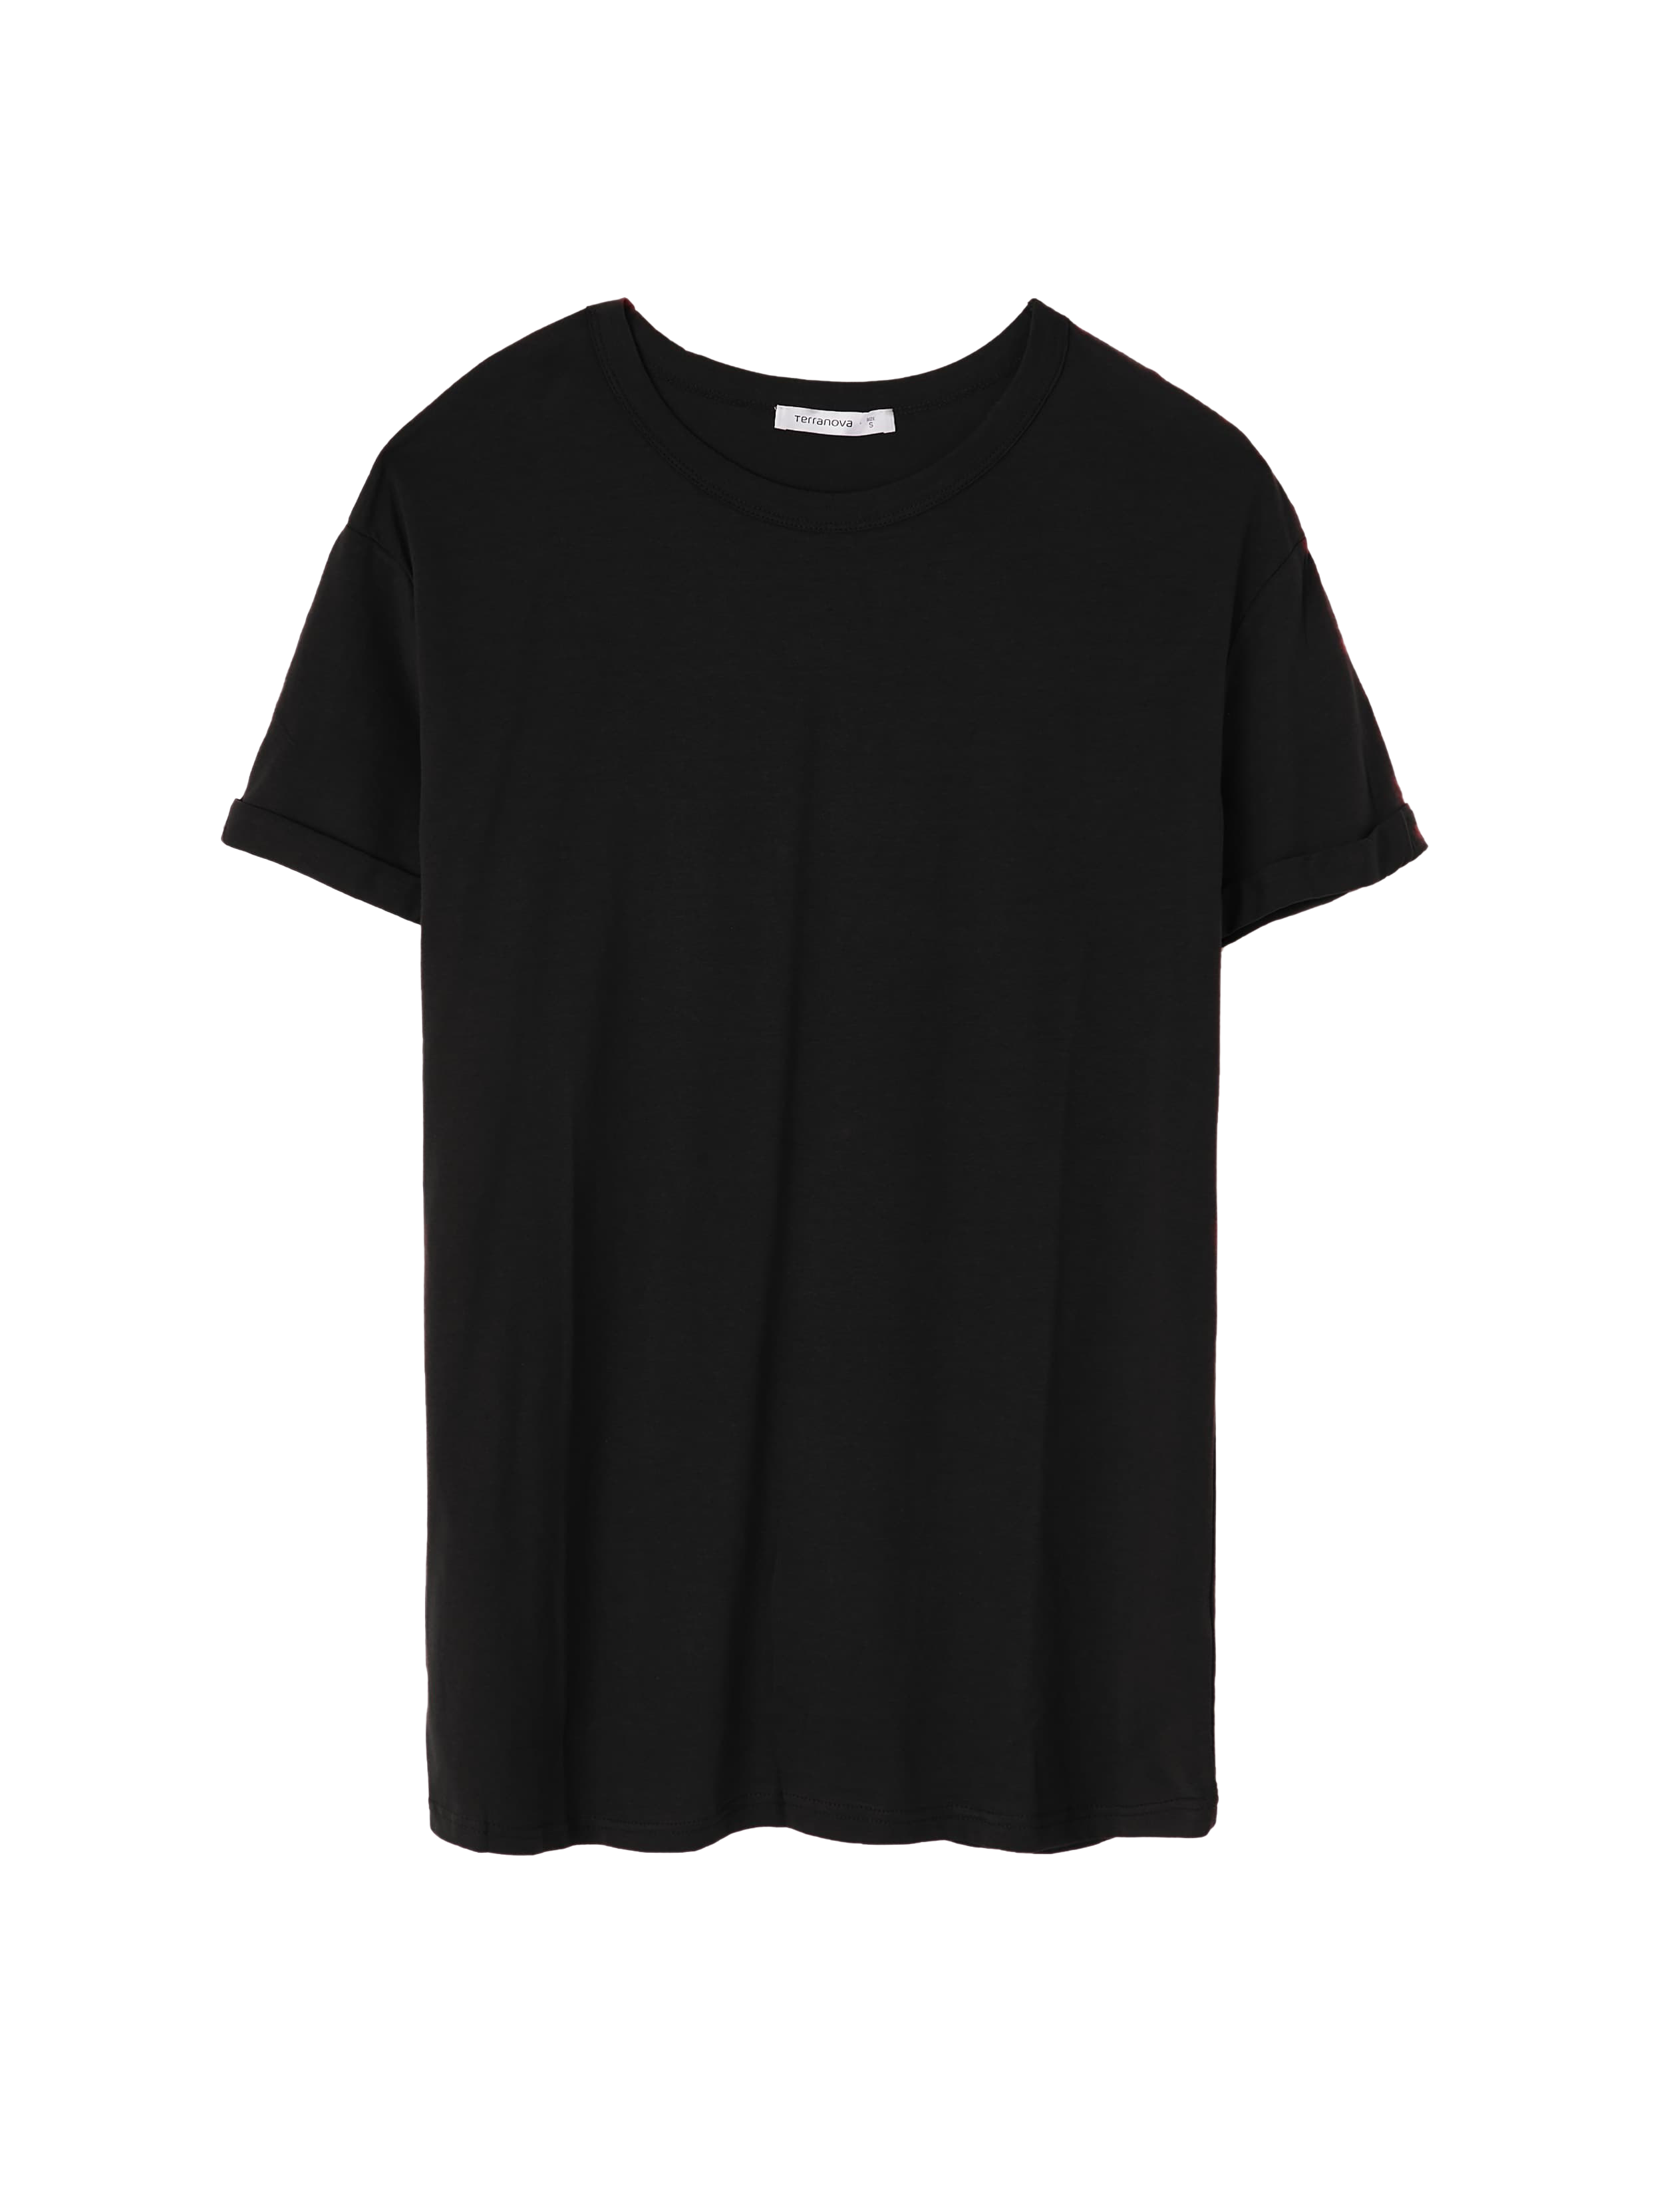 Download إرتد ملابس معنى جديد ورقة الشجر plain black shirt png ...